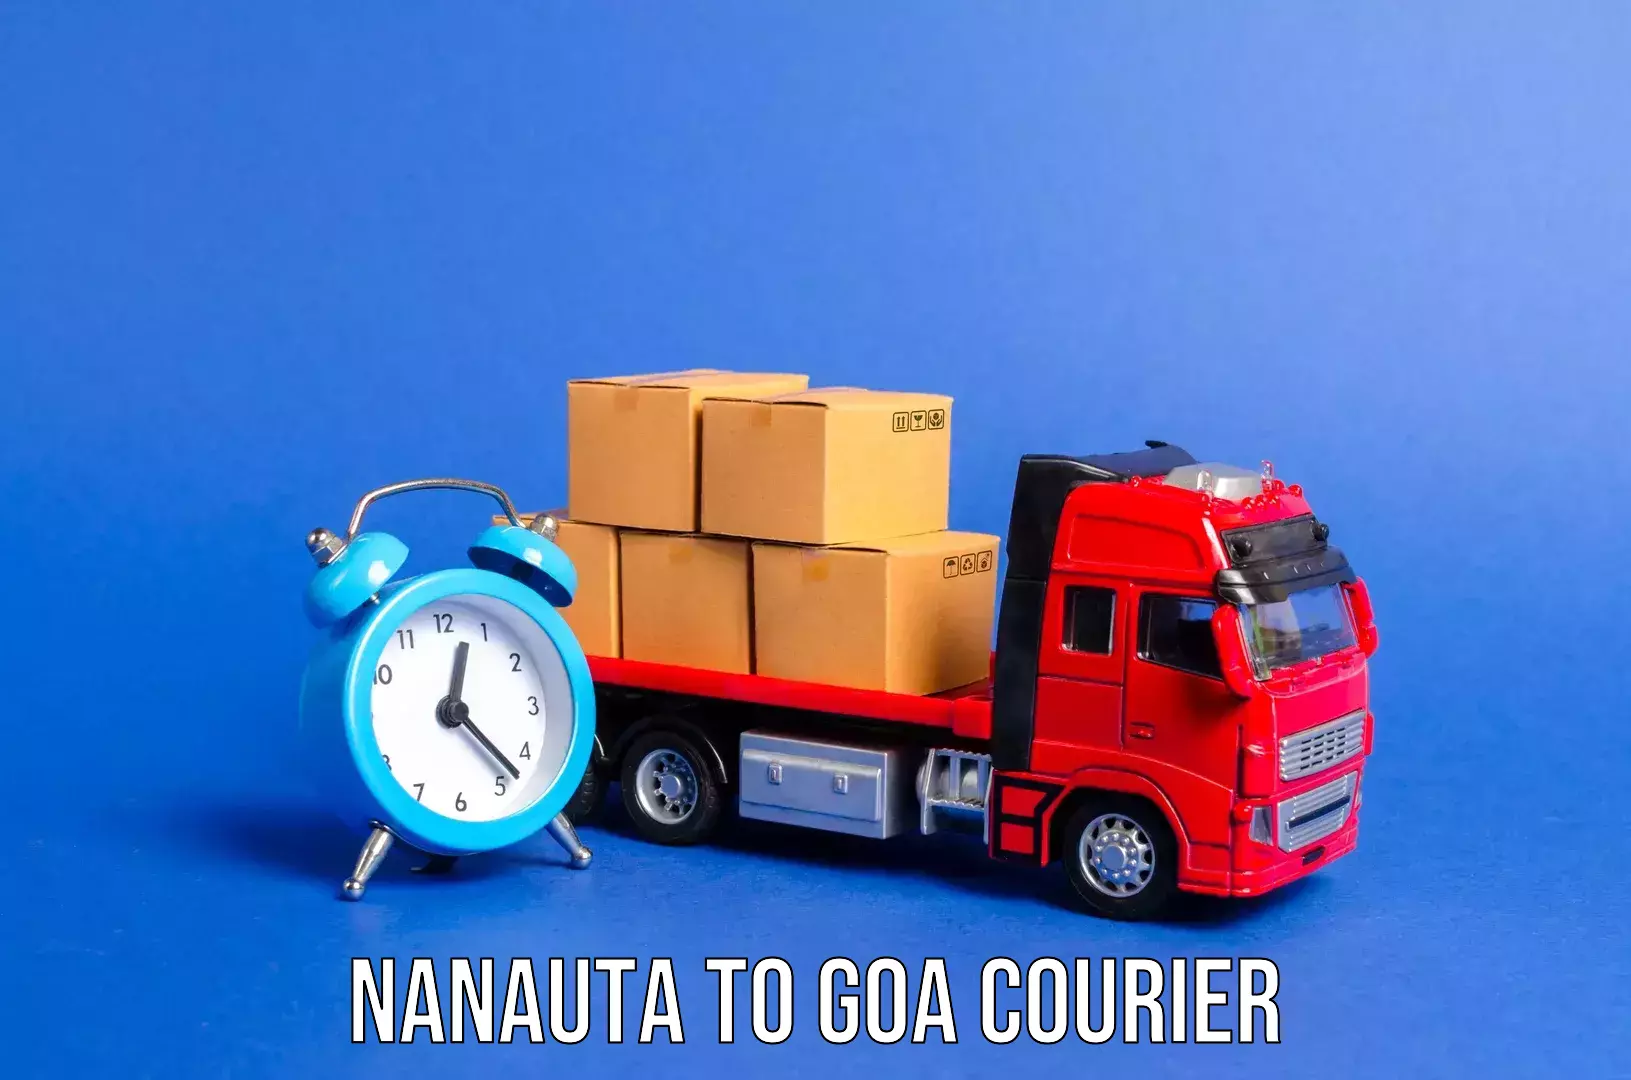 Suburban luggage delivery Nanauta to South Goa